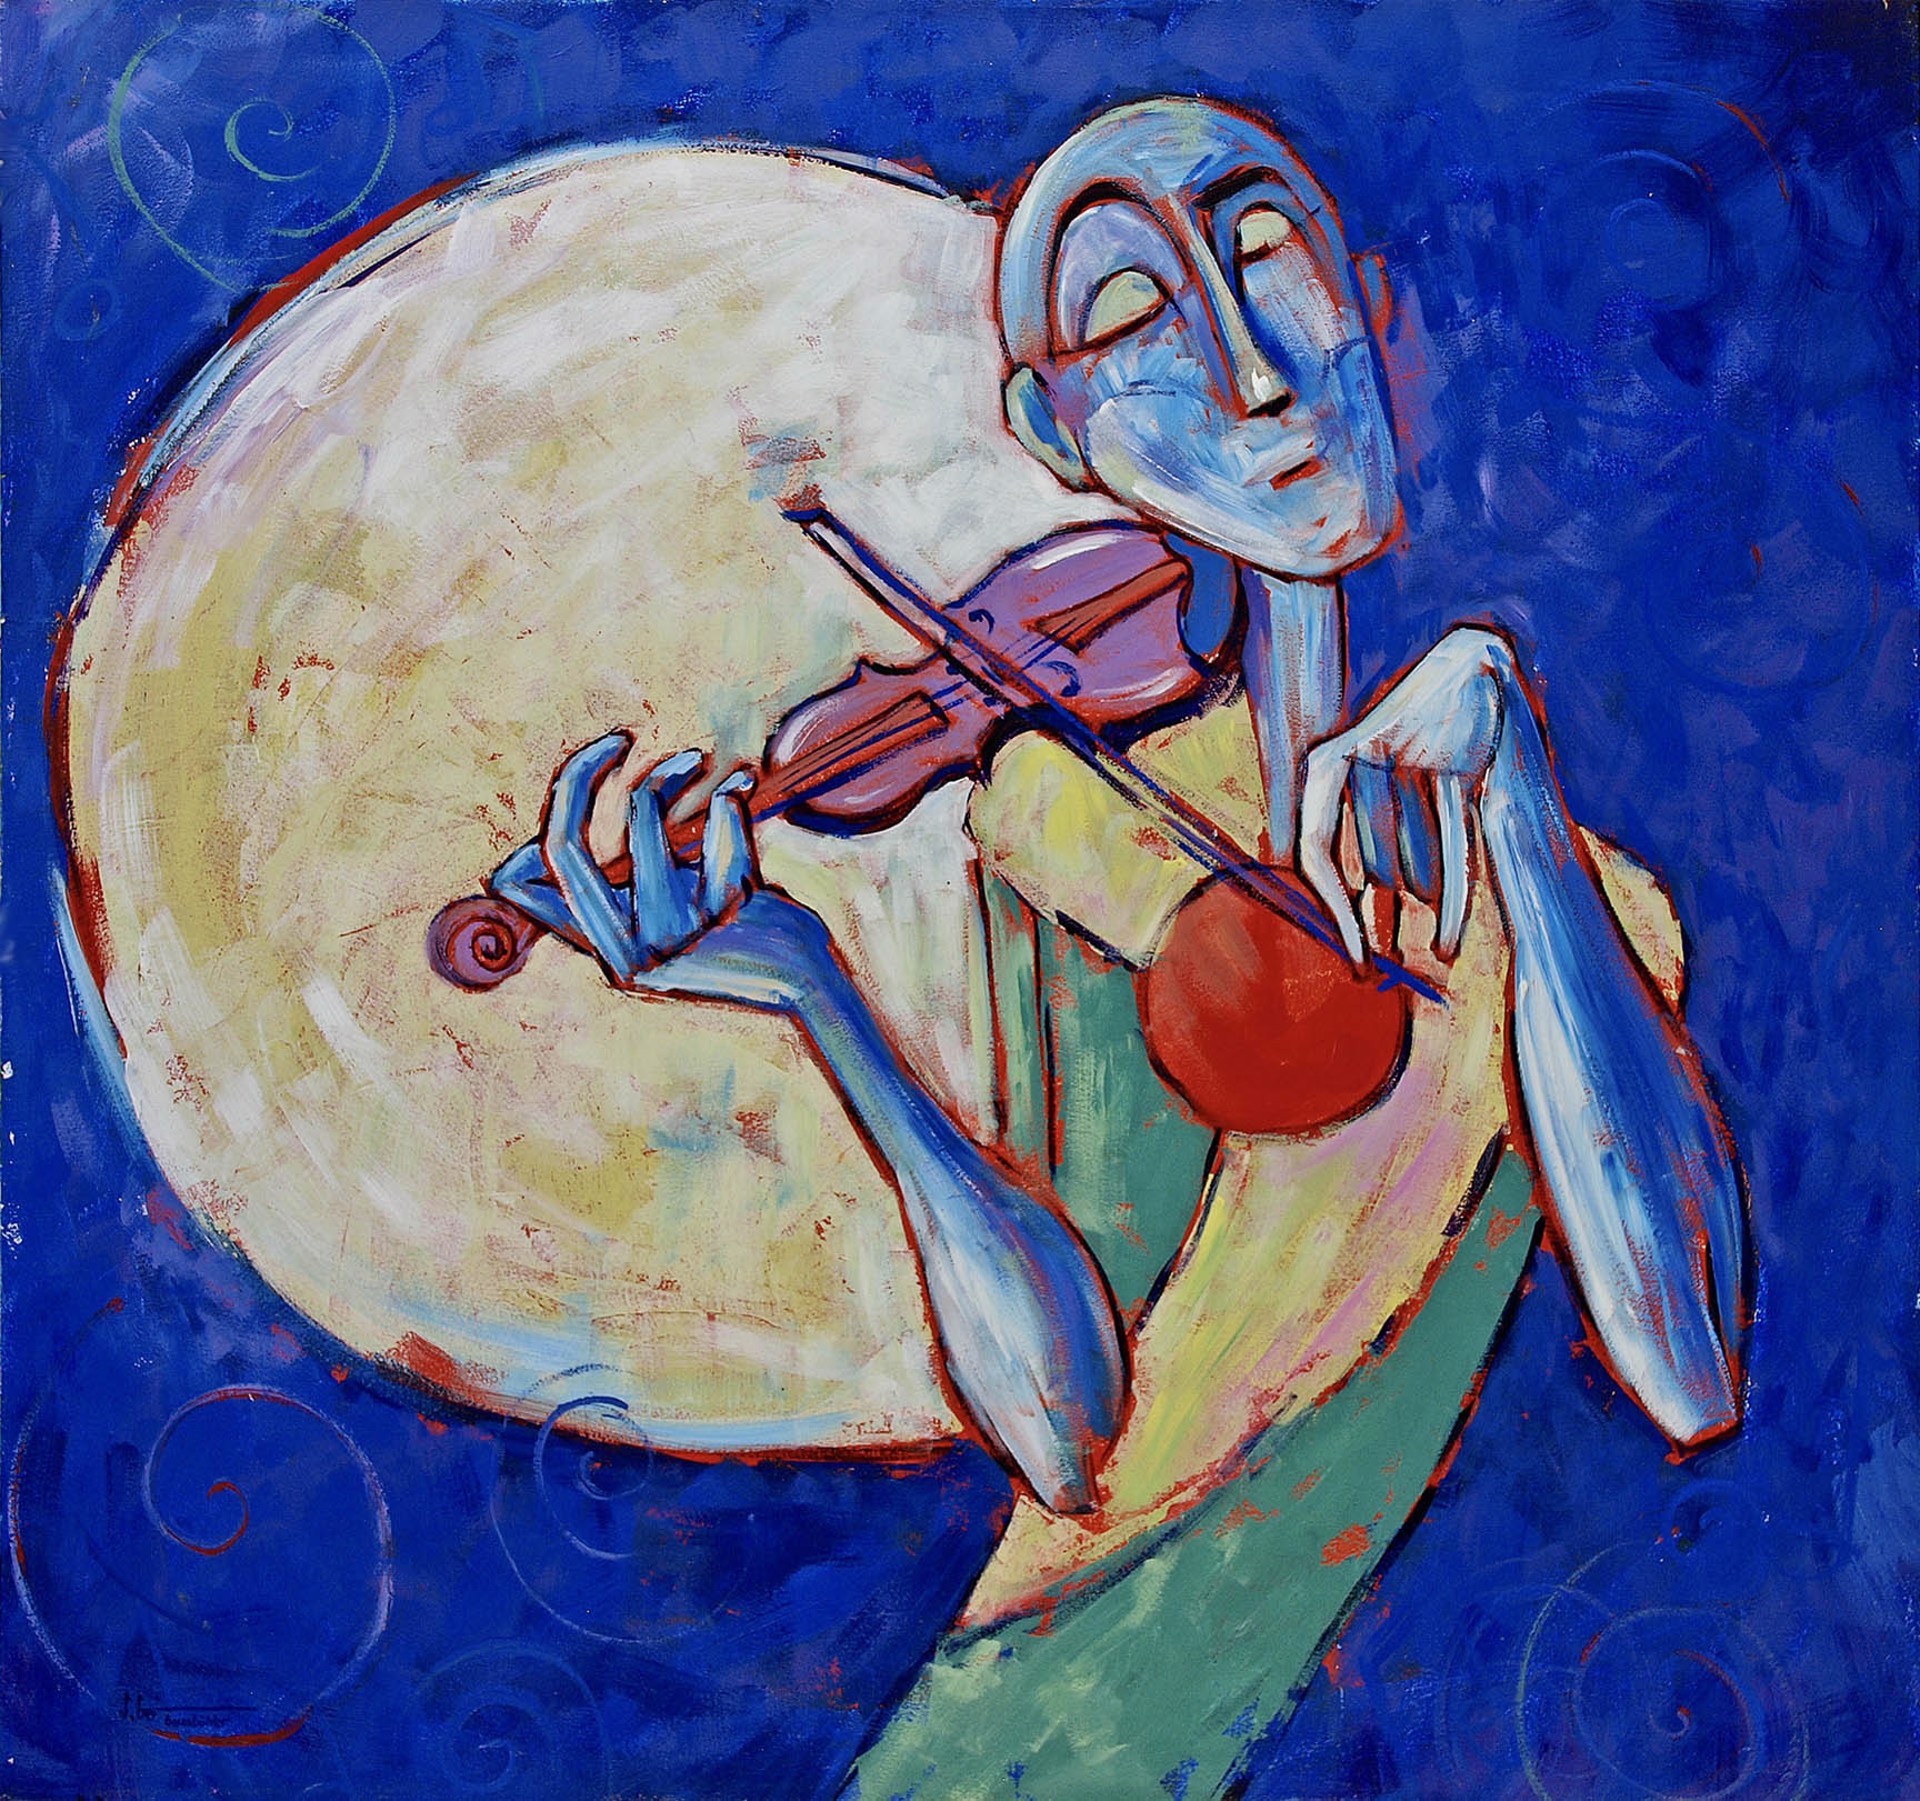 Moonlight Sonata by Stefan GEISSBÜHLER